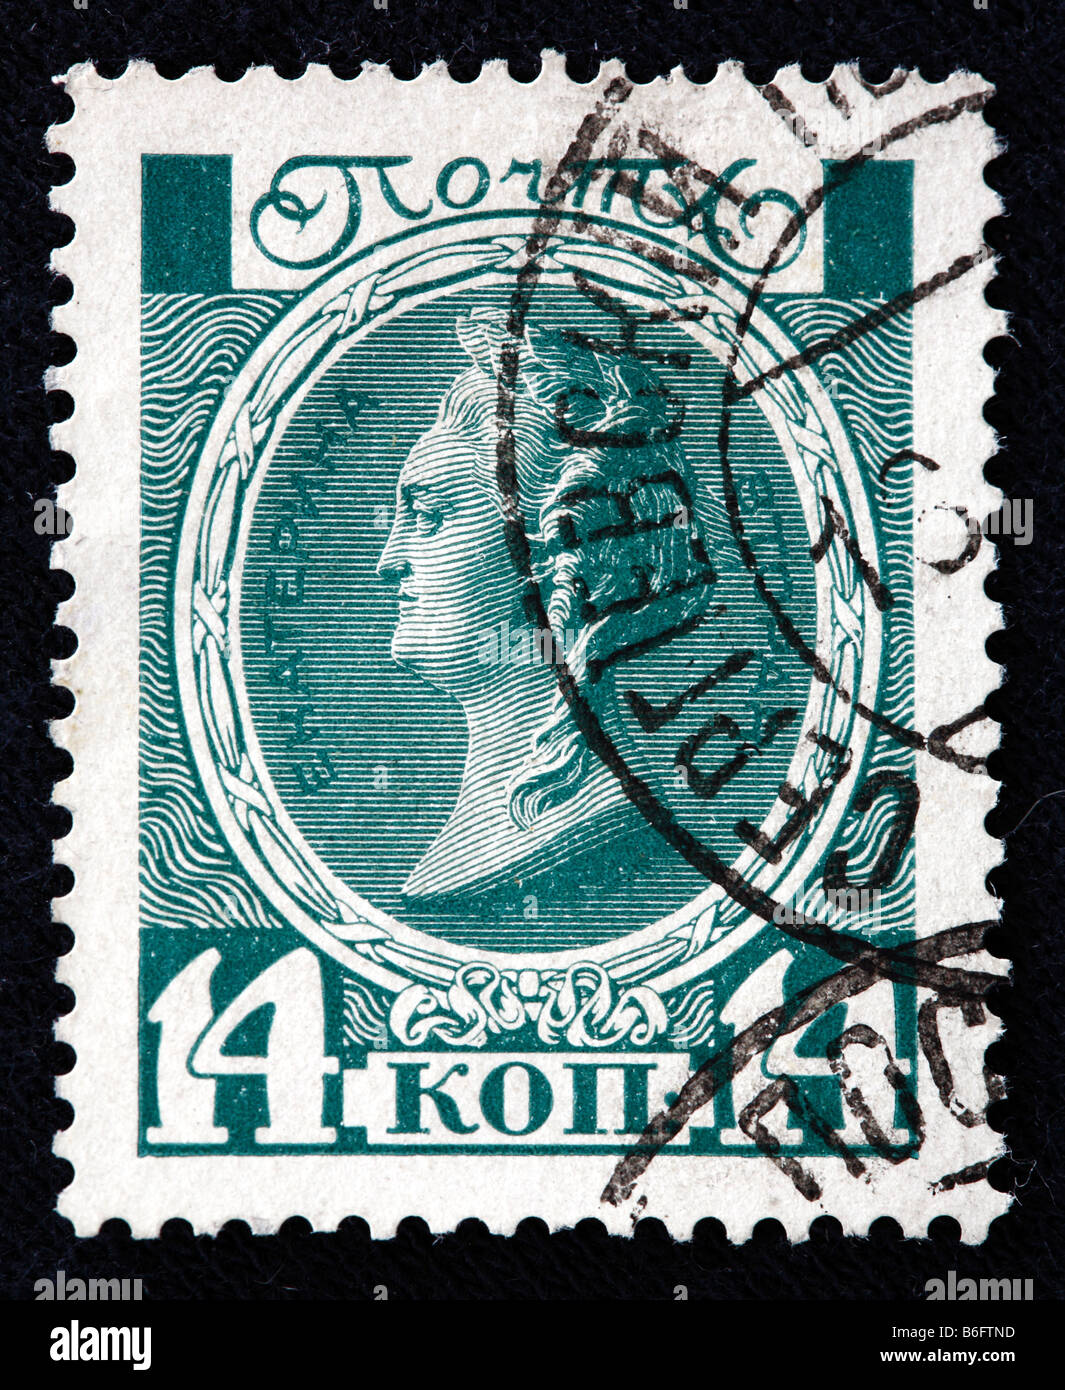 Katharina II. der große, Kaiserin von Russland (1762-1796), Briefmarke, Russland Stockfoto